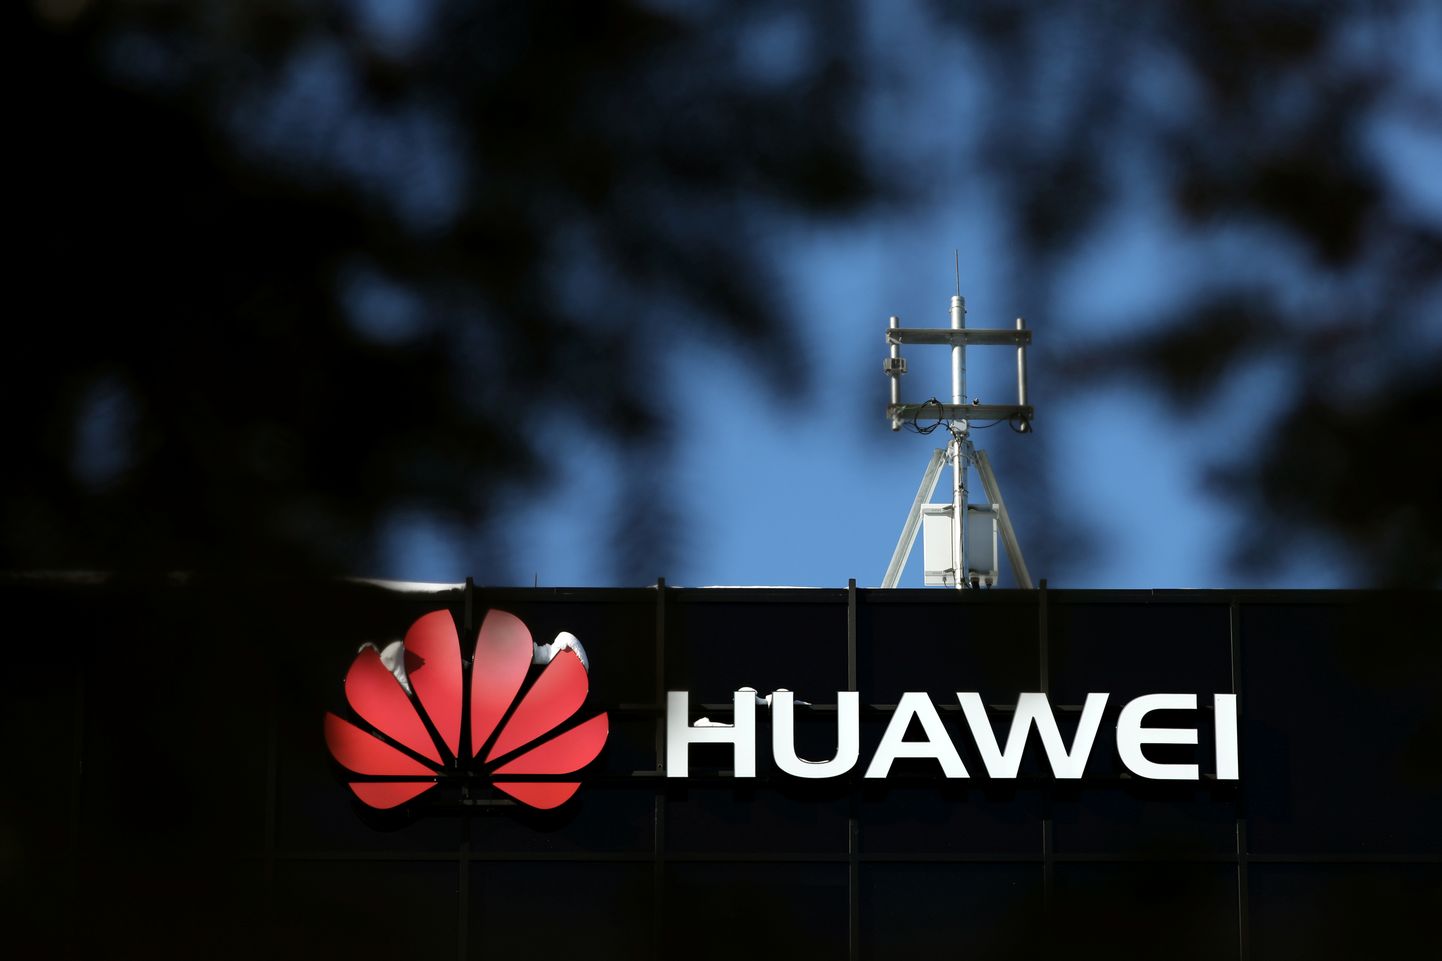 "Huawei" logo.